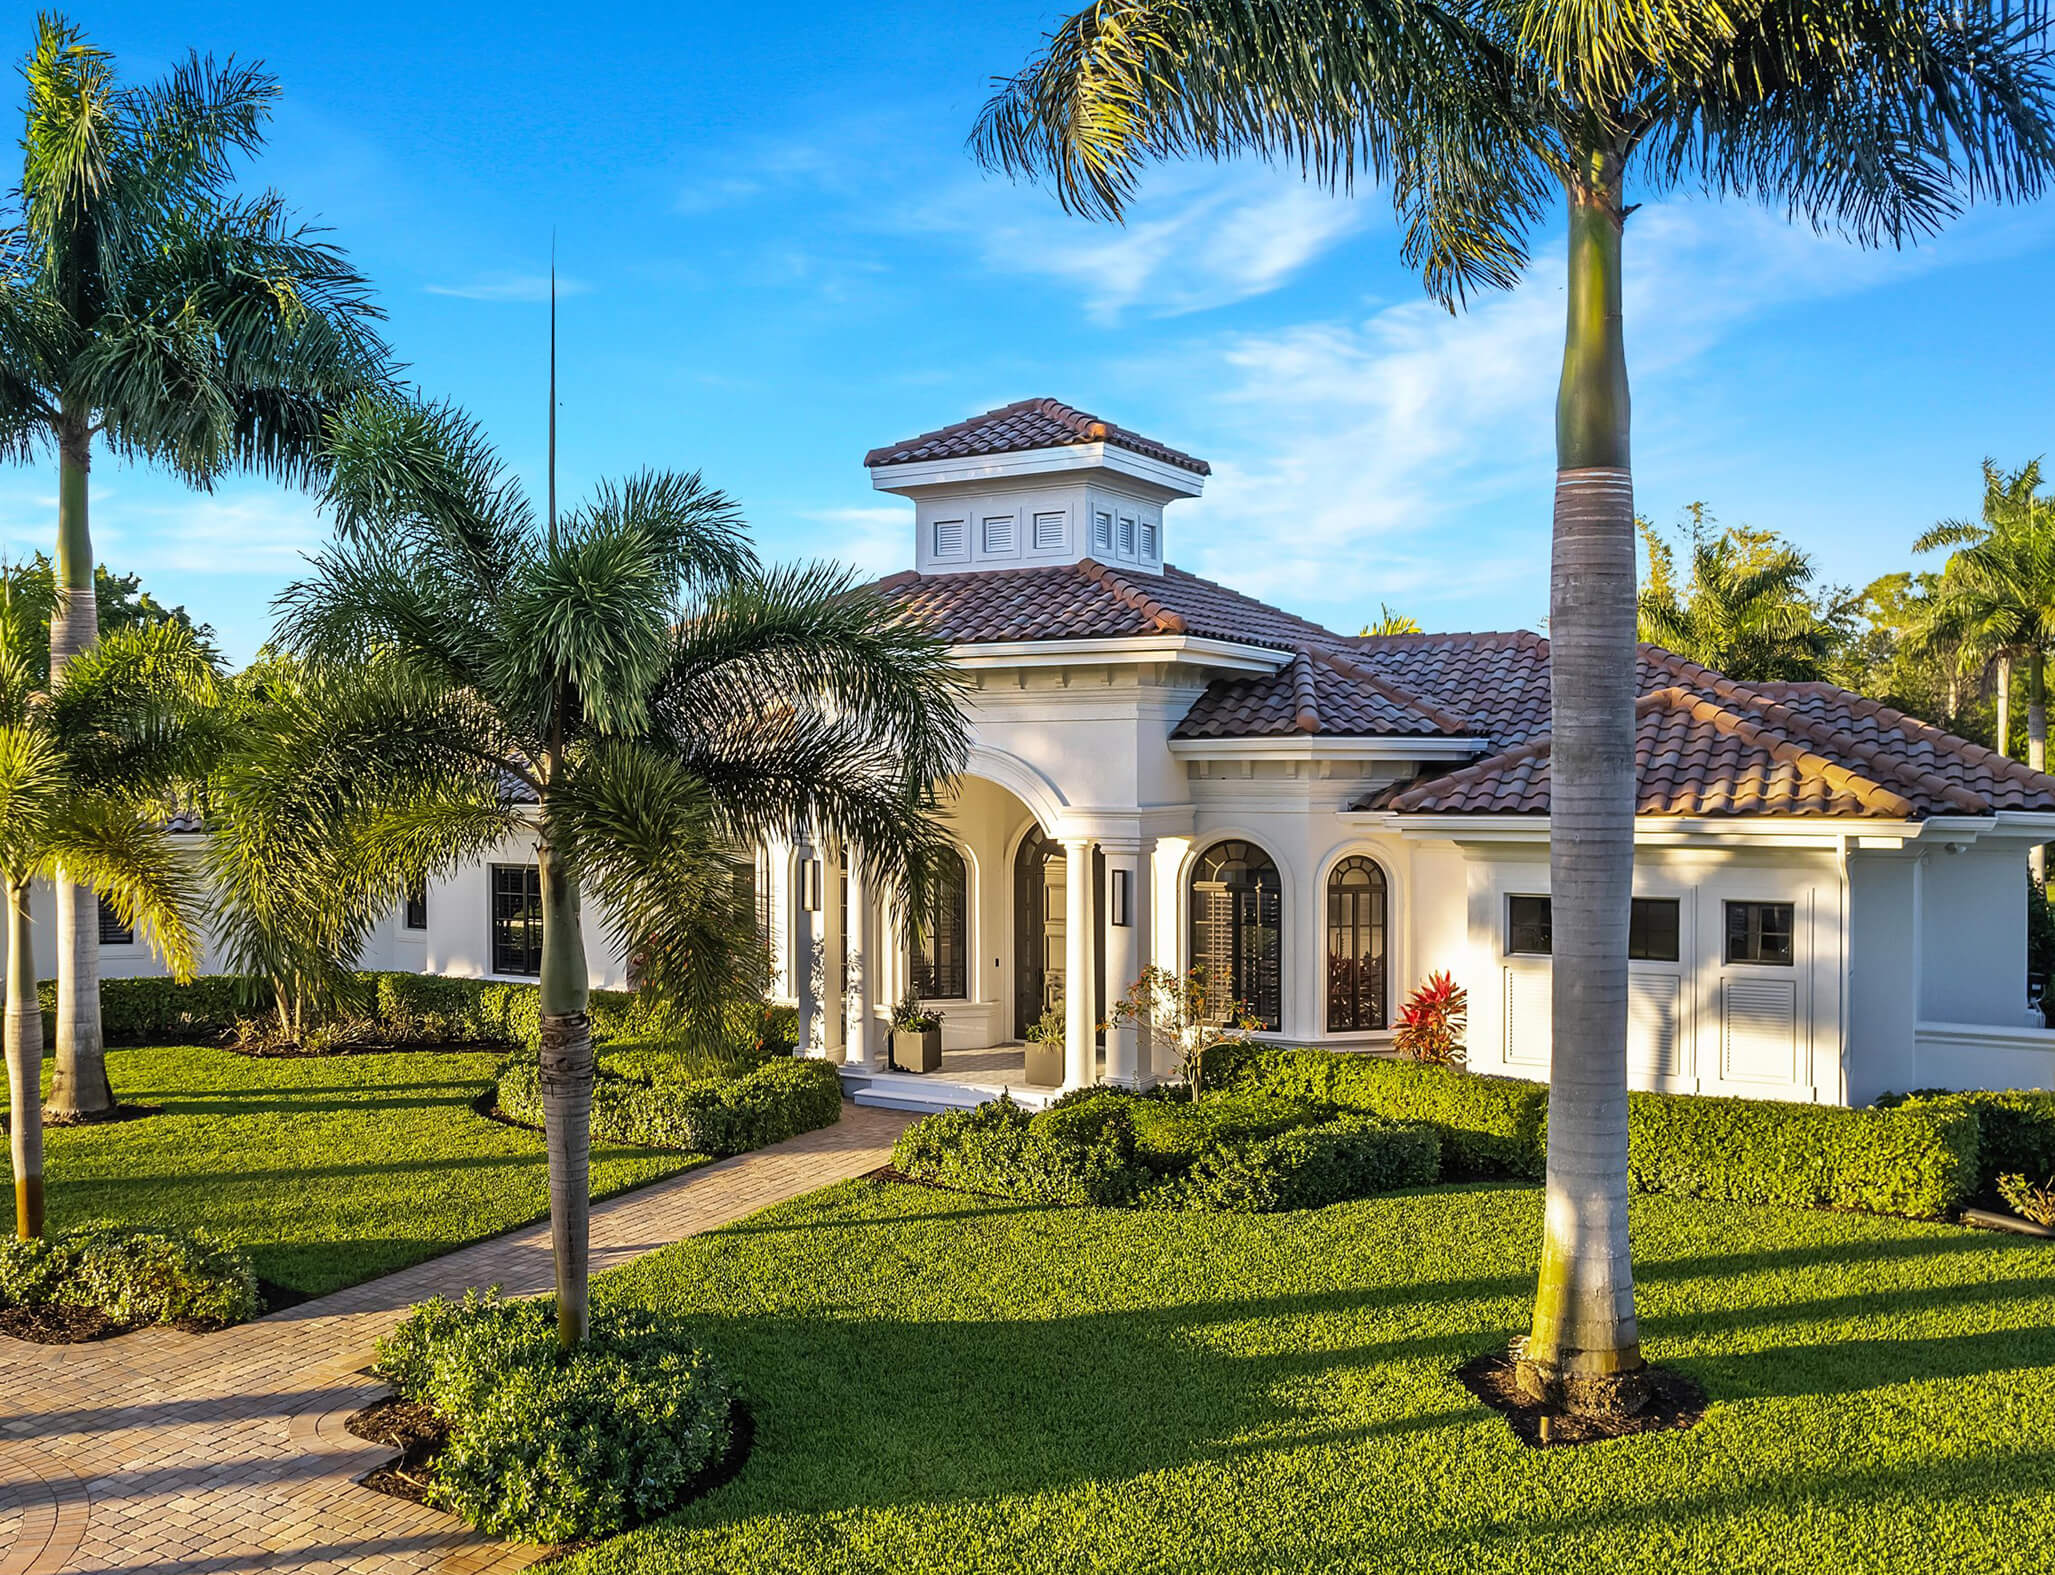 Sonja Pound sells gorgeous homes in Naples, Florida